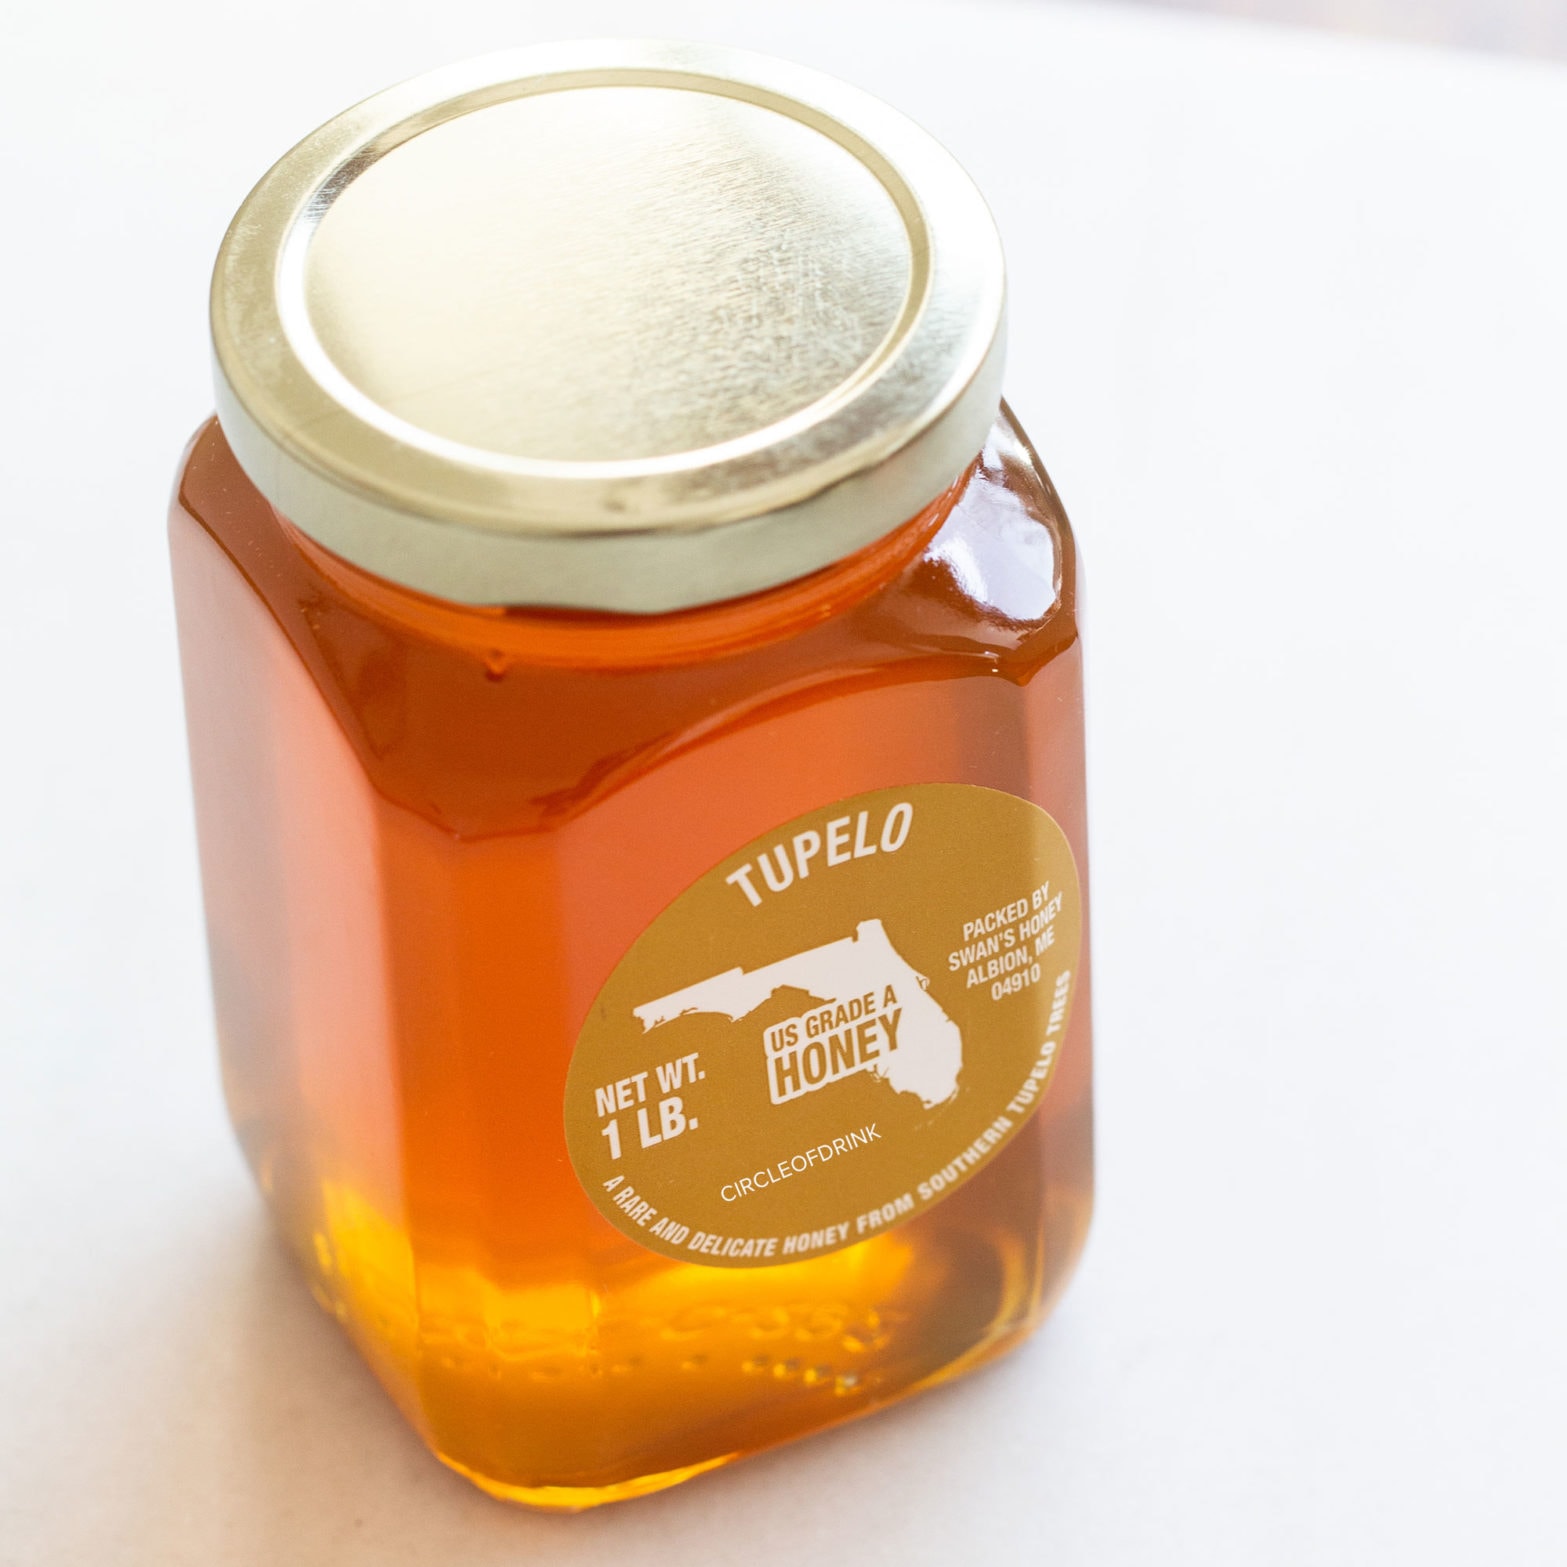 Tupelo Grade A Honey – 16oz Glass Jar